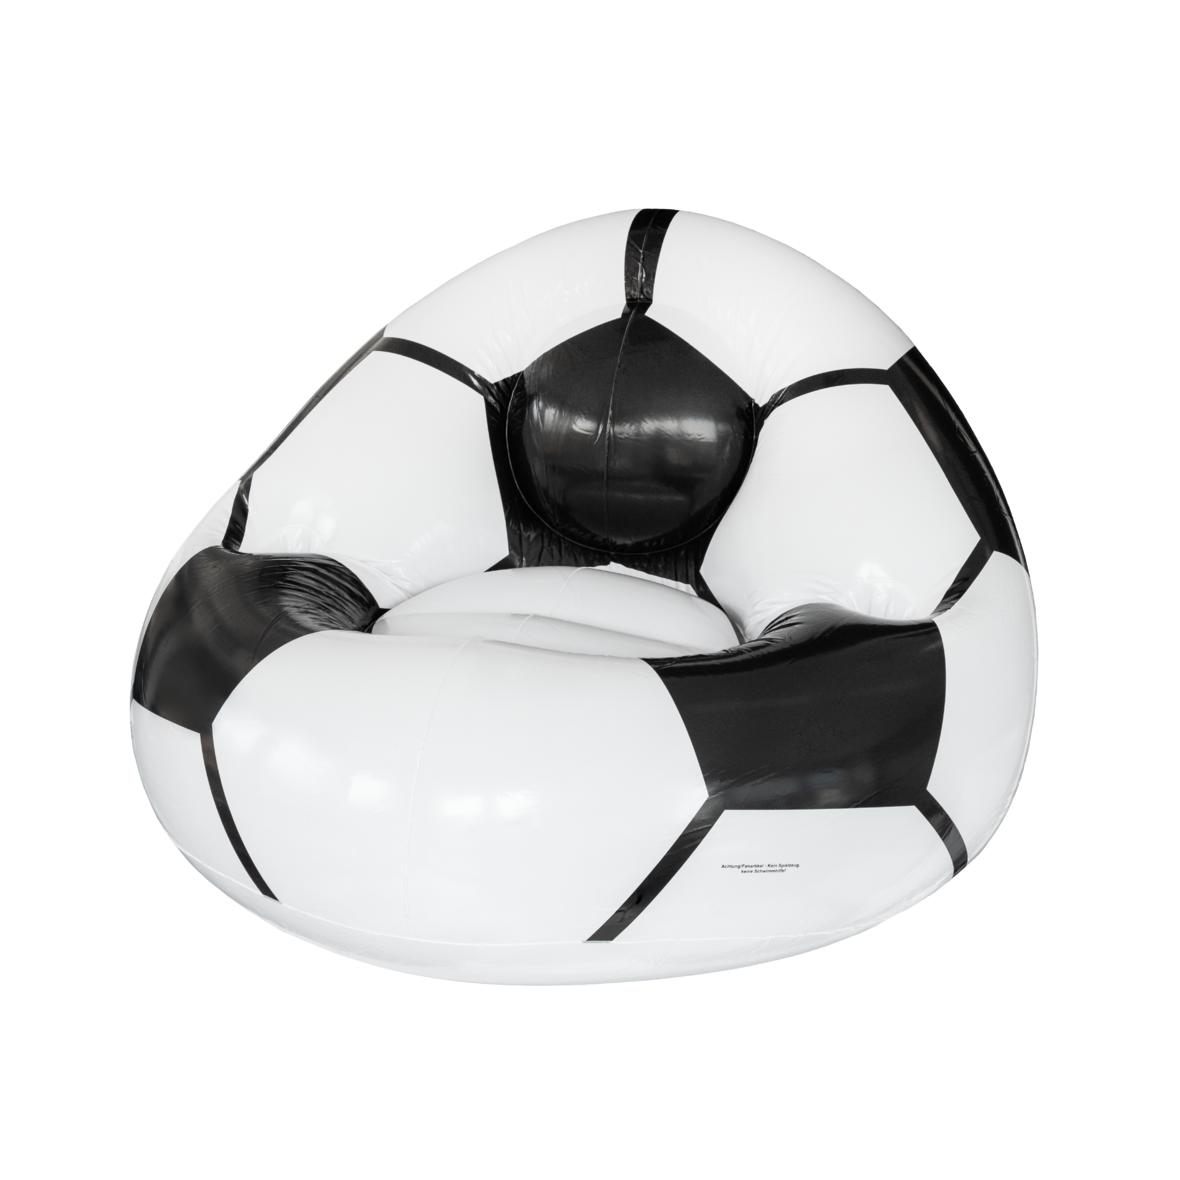 Silla Inflable con Aspecto de Balón de Fútbol con Portavasos - Oviedo⁠6